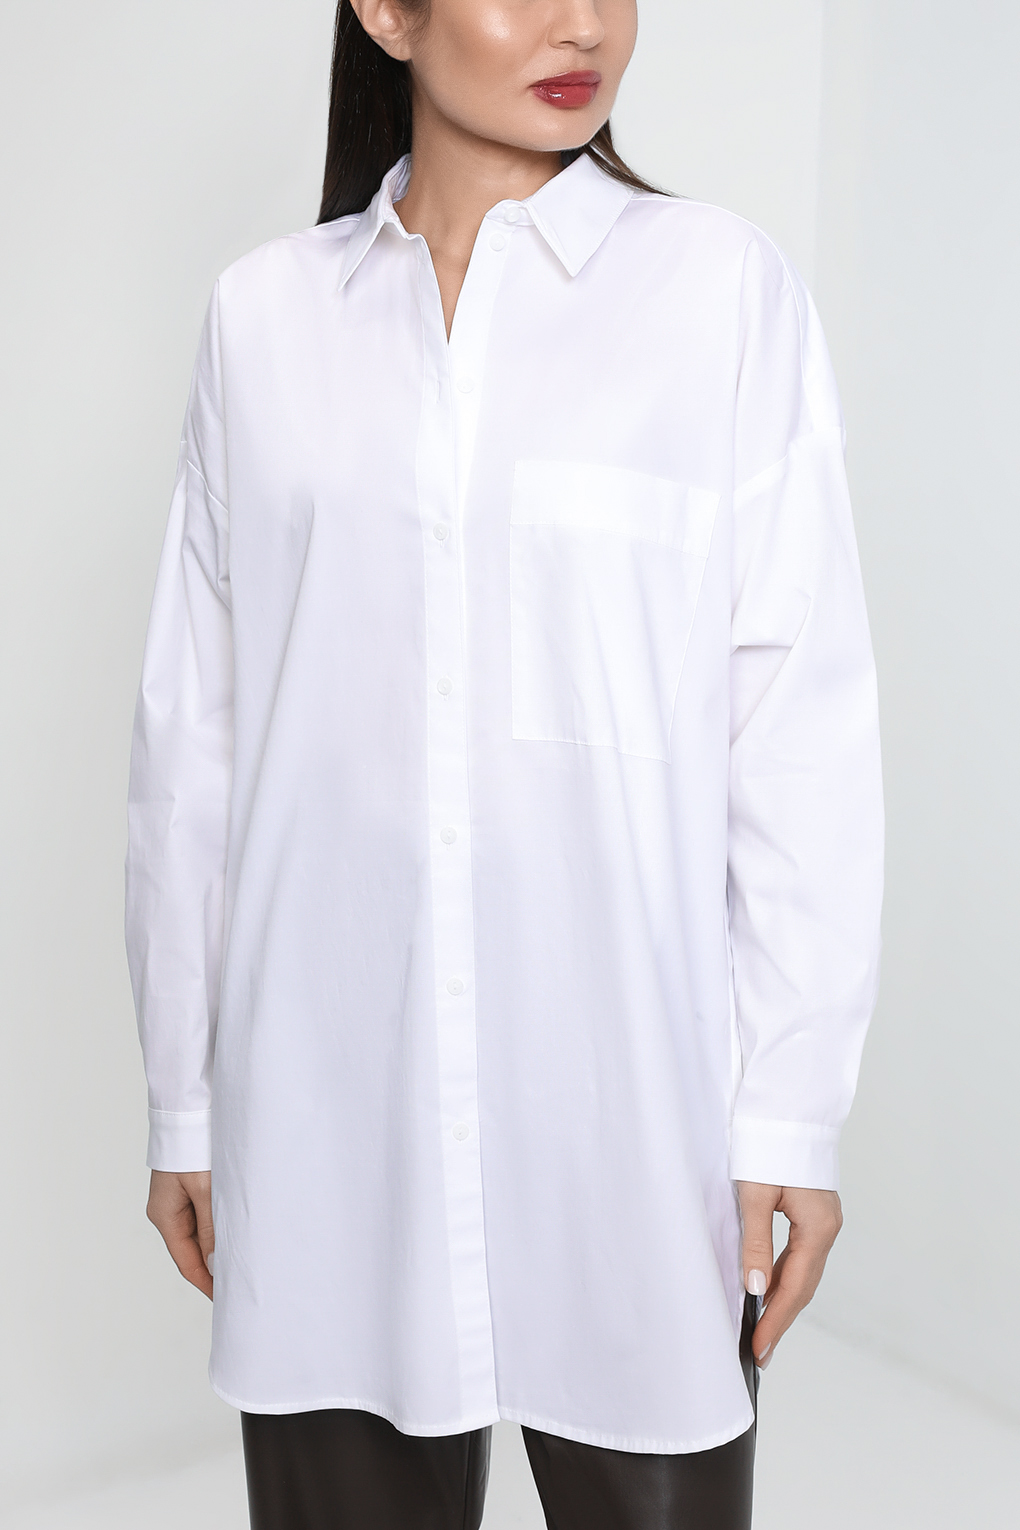 Рубашка женская Esprit Edc 992CC1F306 белая M